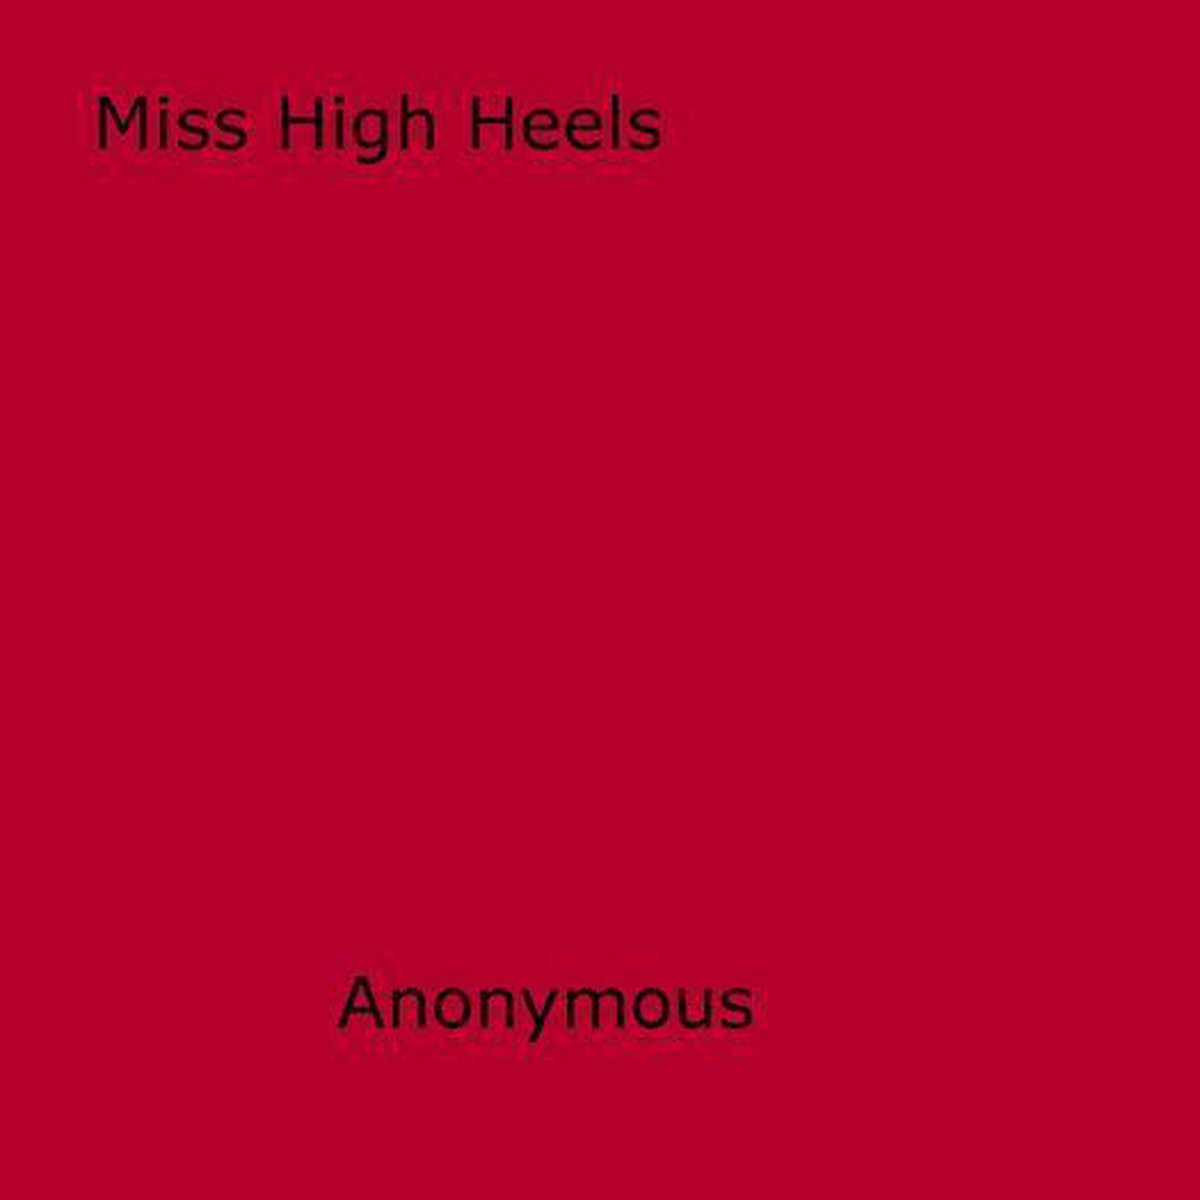 Miss high heels